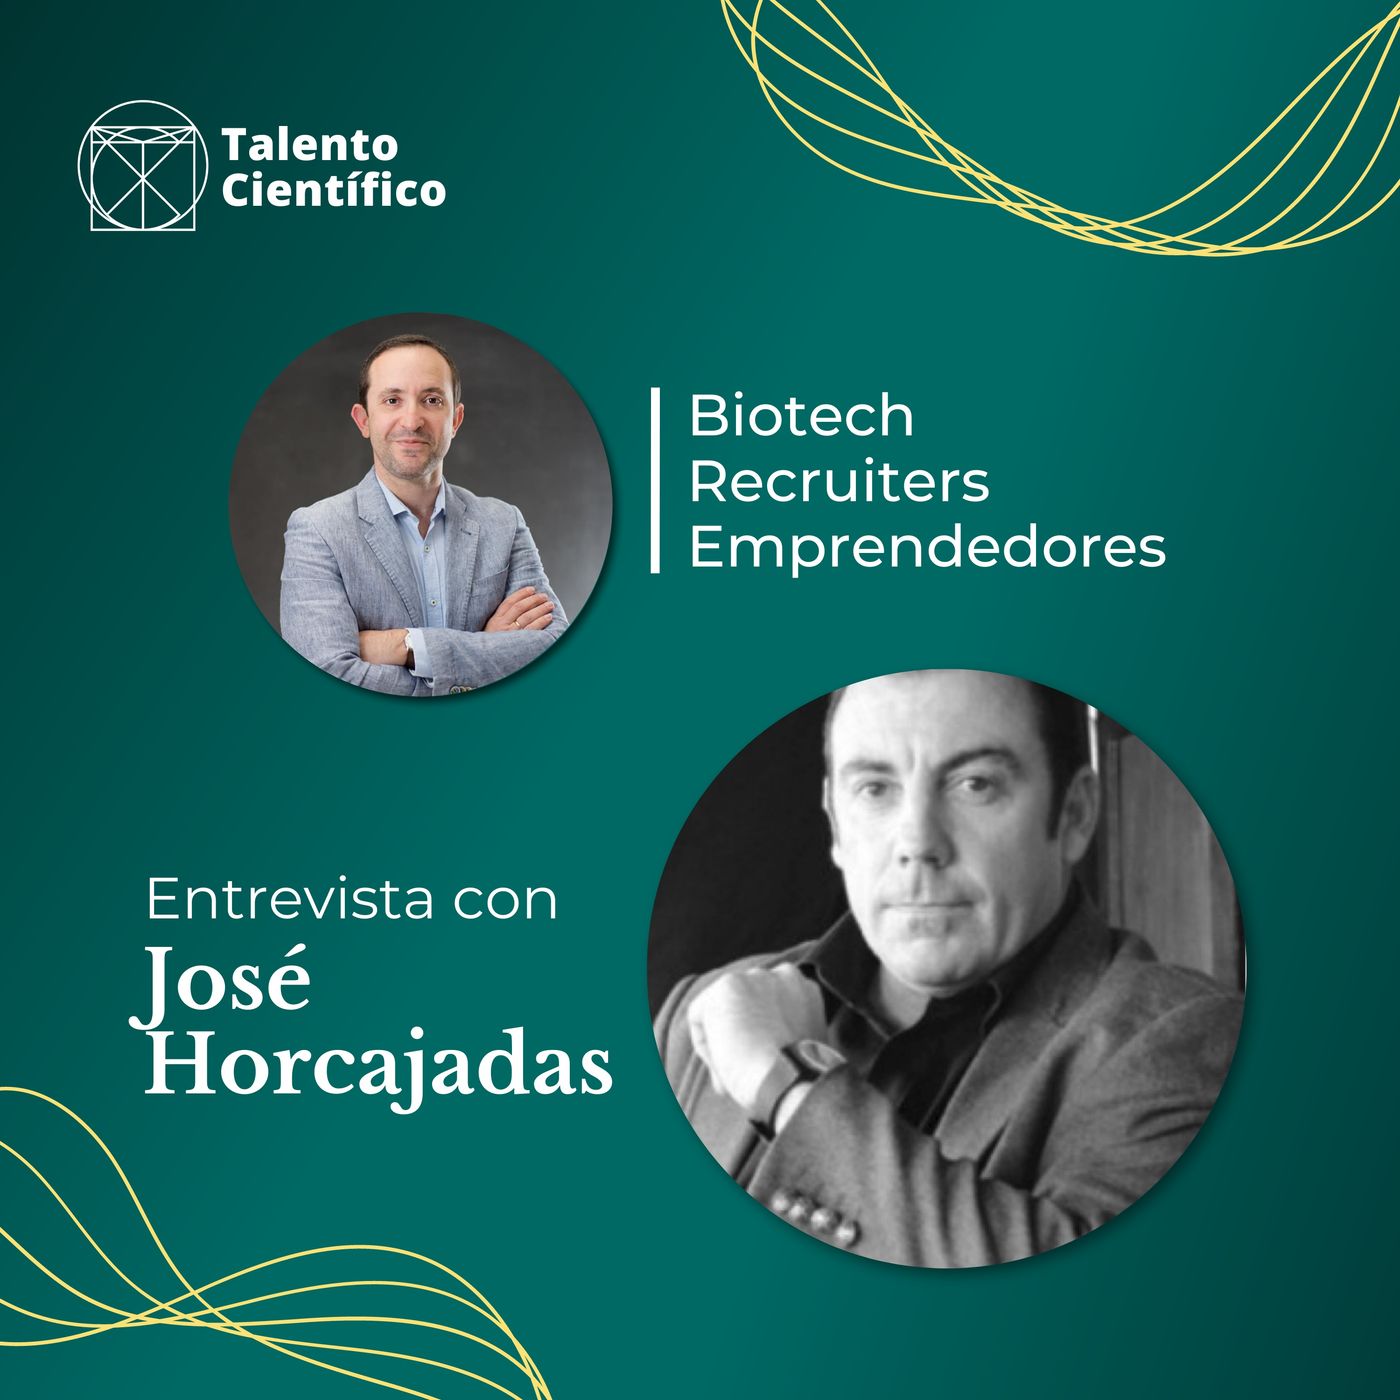 Innovación, emprendimiento y ciencia - Entrevista con José Horcajadas